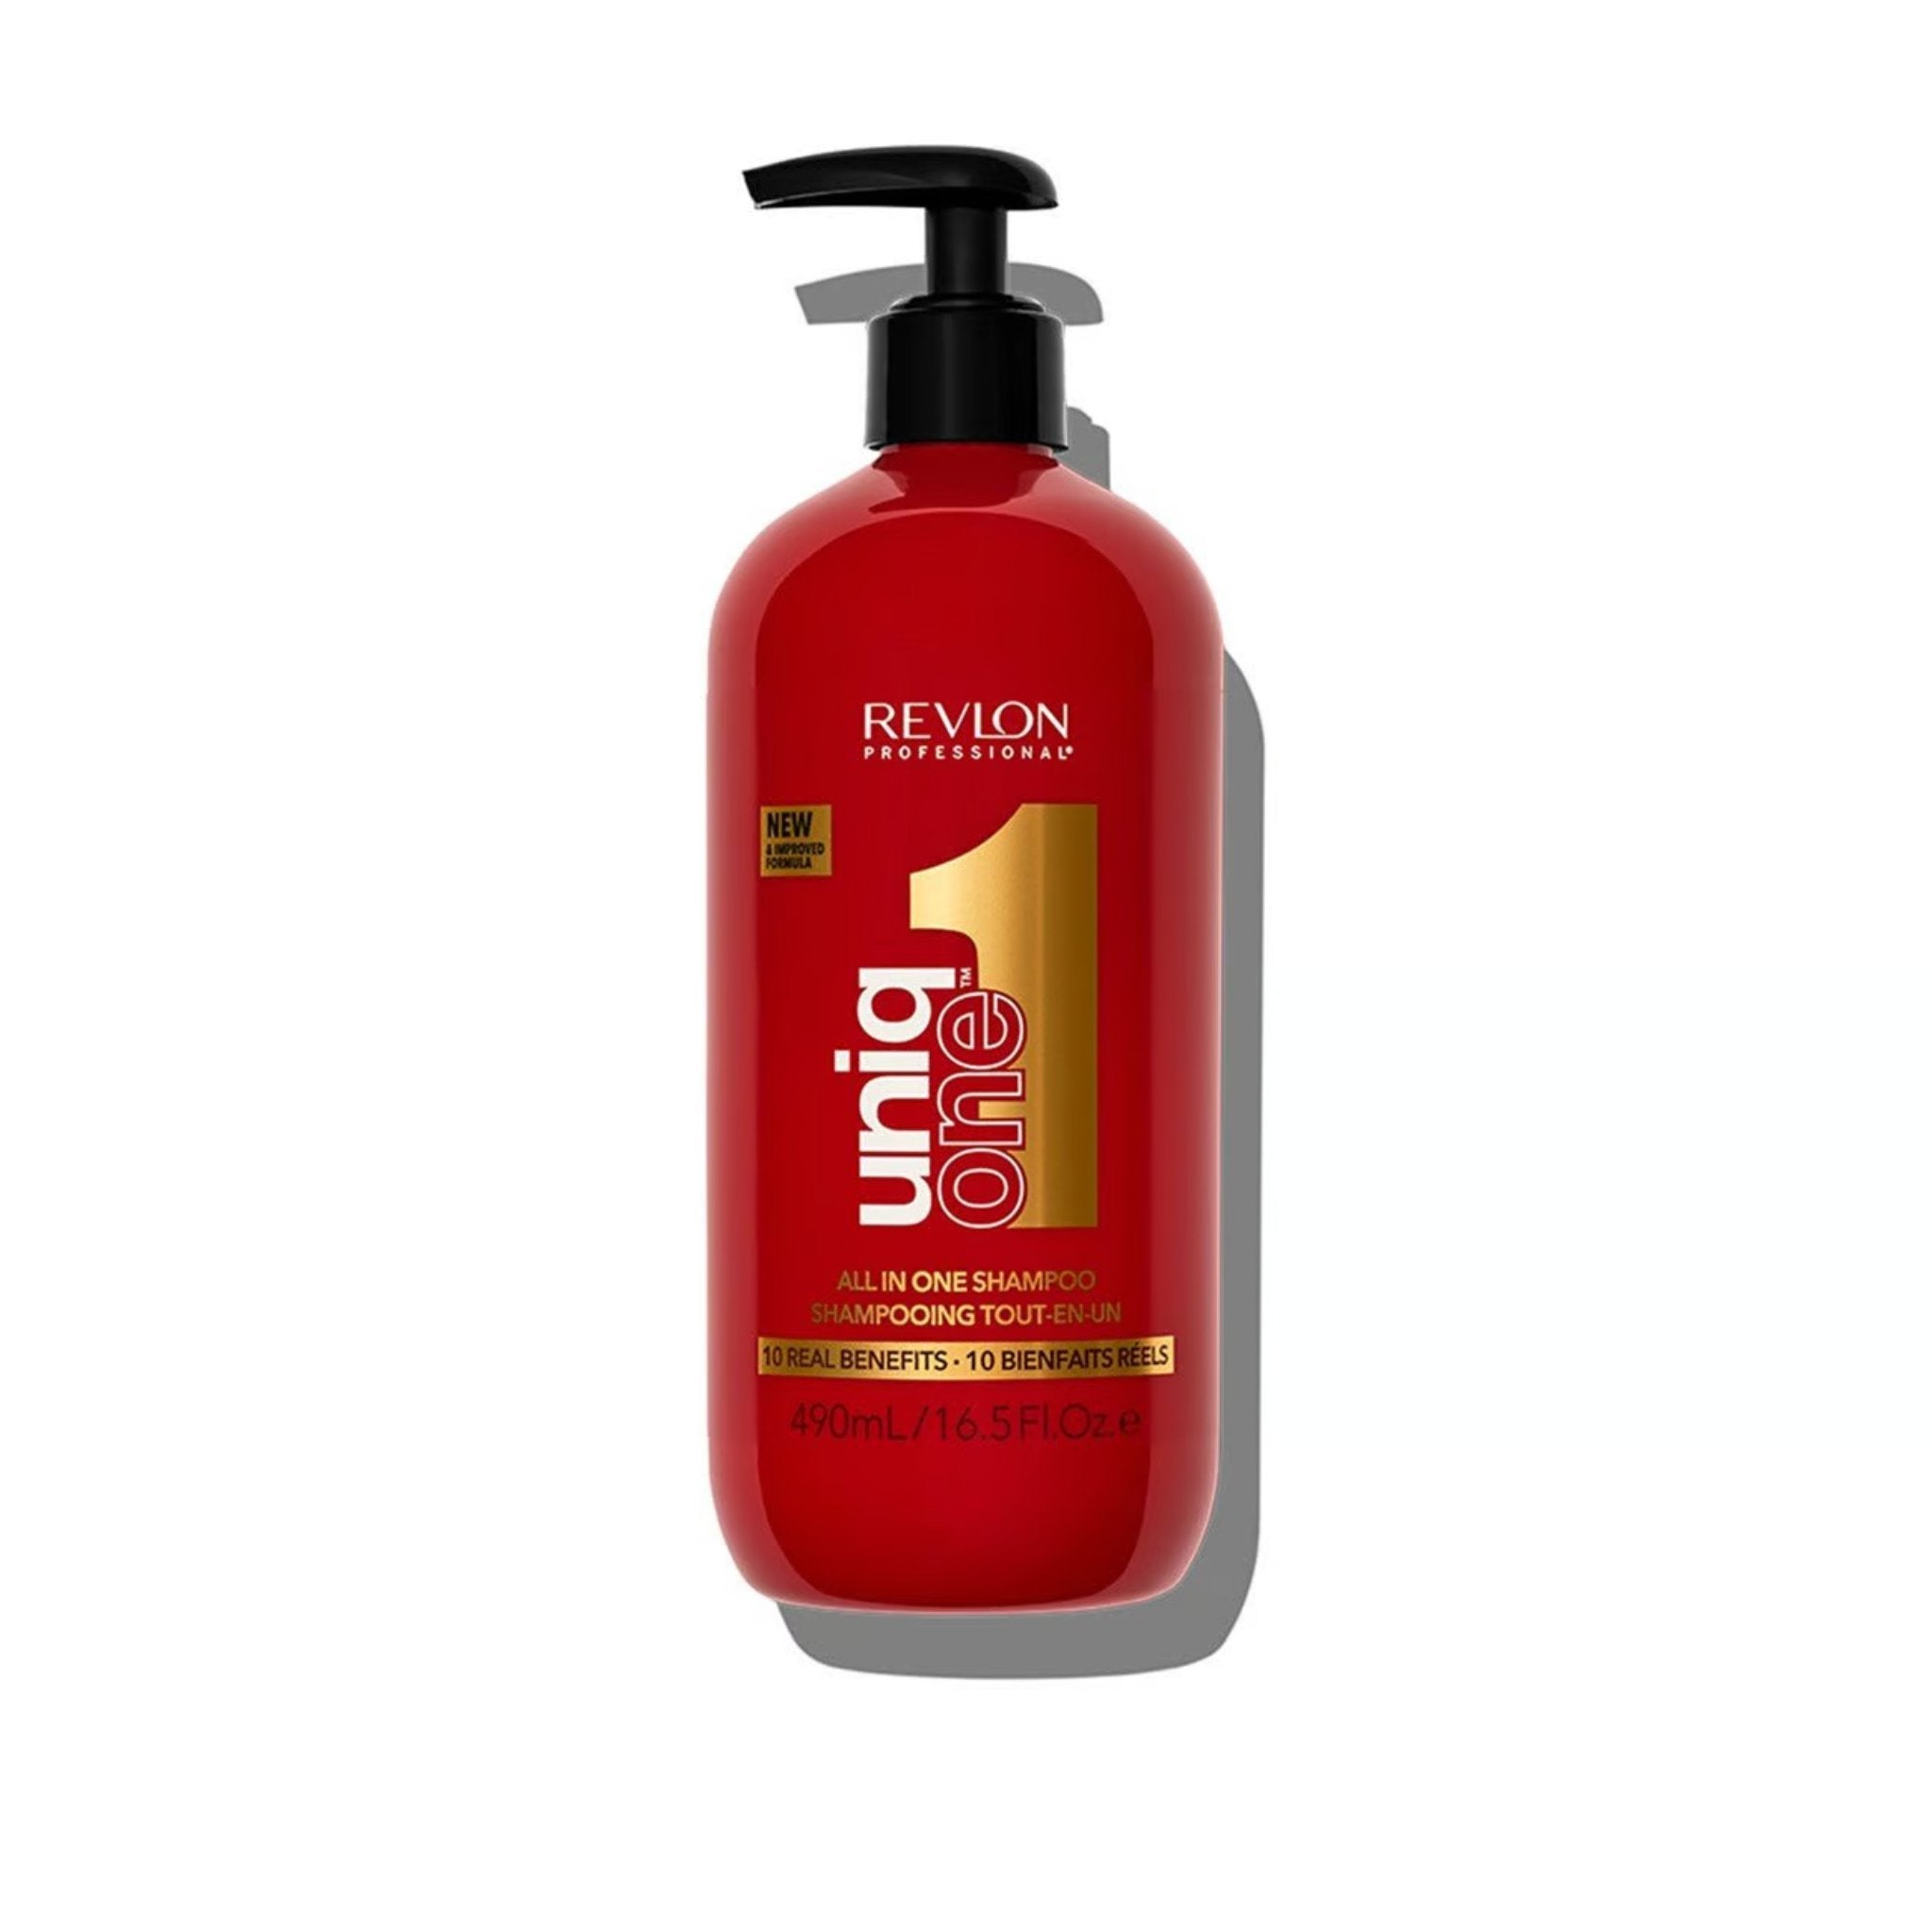 Revlon profesionnel. Shampoing Tout-En-Un - 490 ml - Concept C. Shop